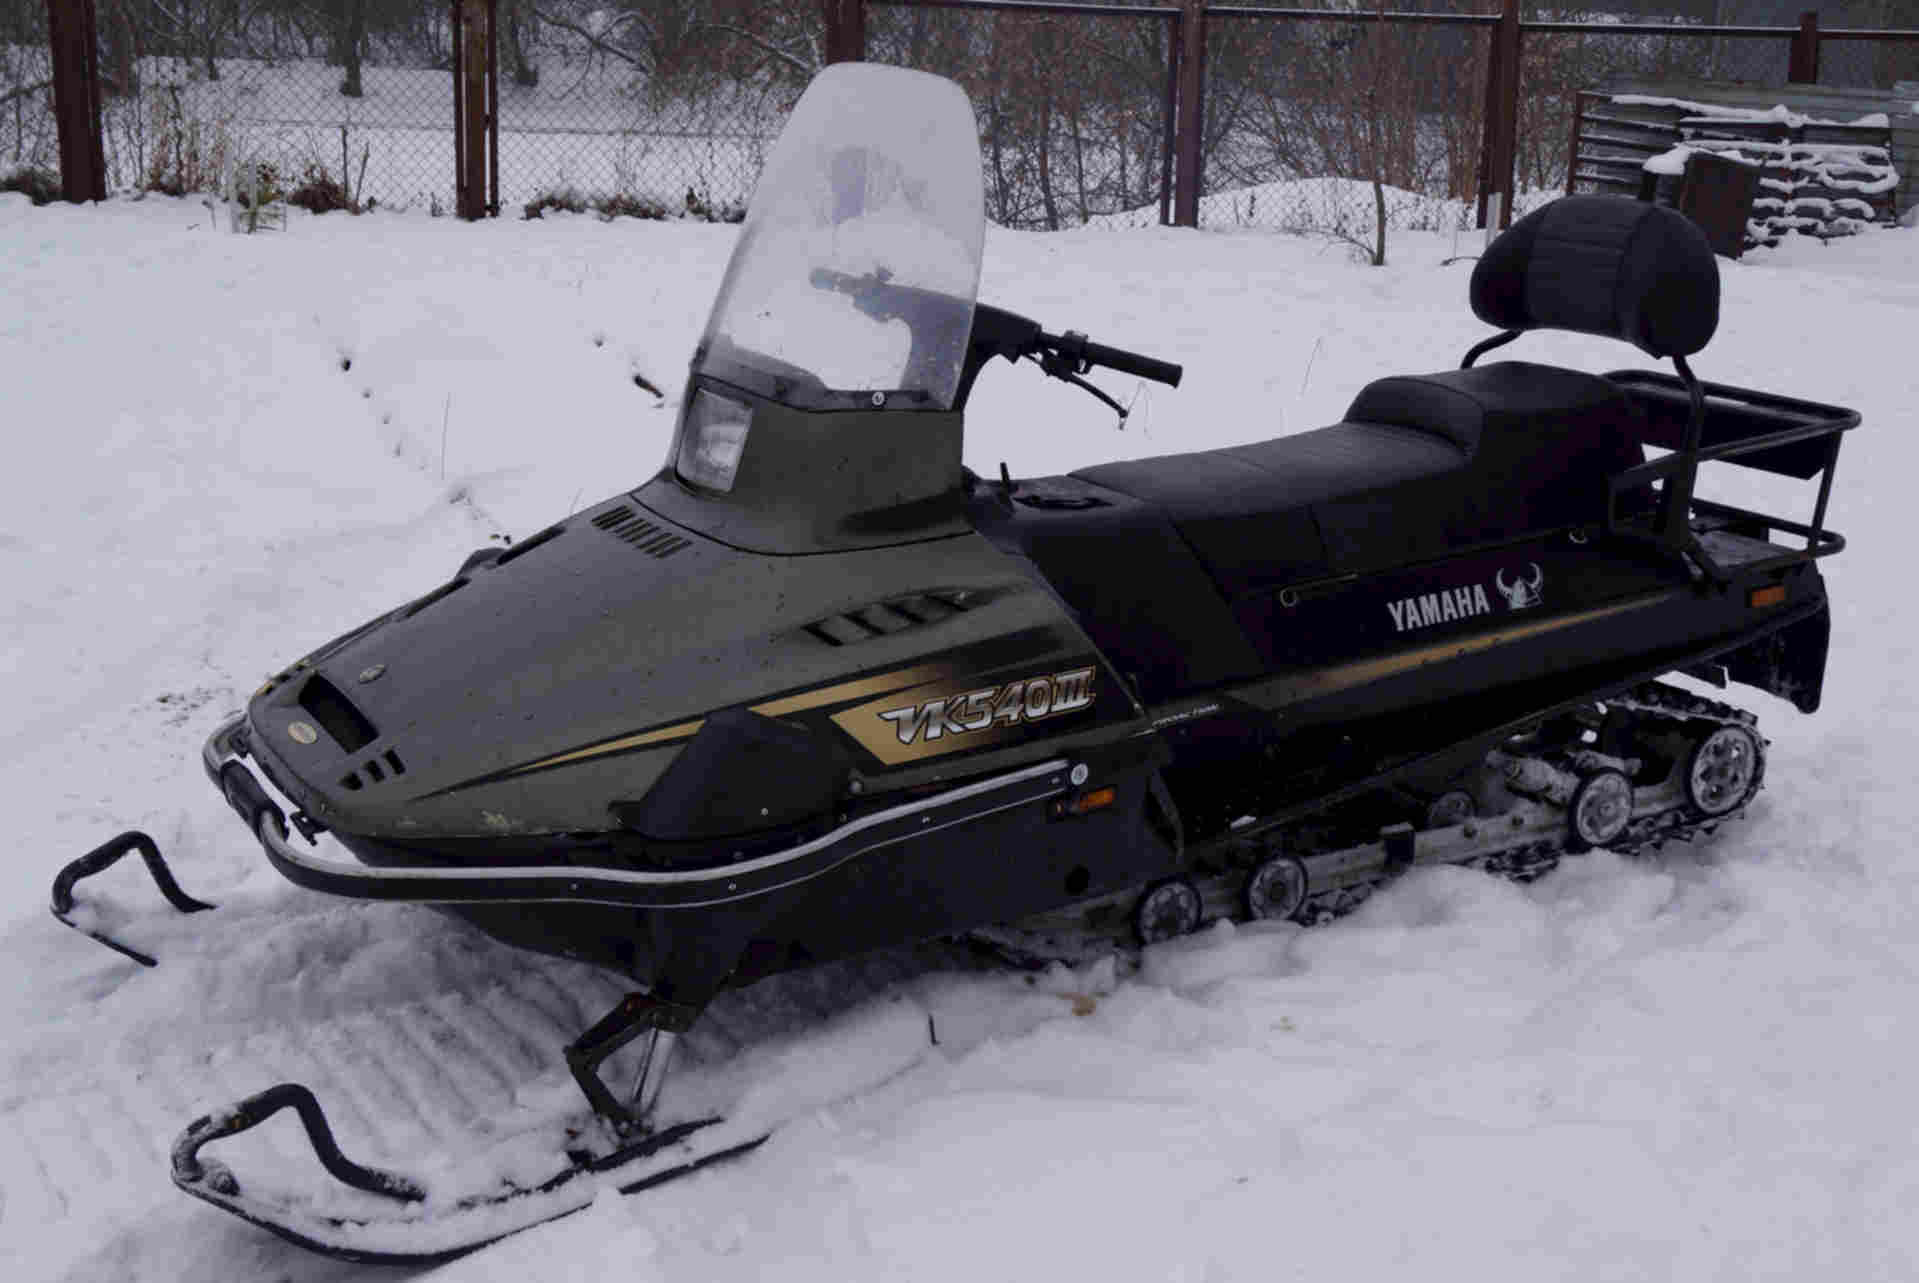 Купить снегоход бу недорого на авито. Снегоход Yamaha Viking 540. Снегоход Ямаха vk540. Снегоход Ямаха ВК 540. Ямаха Викинг vk540e.